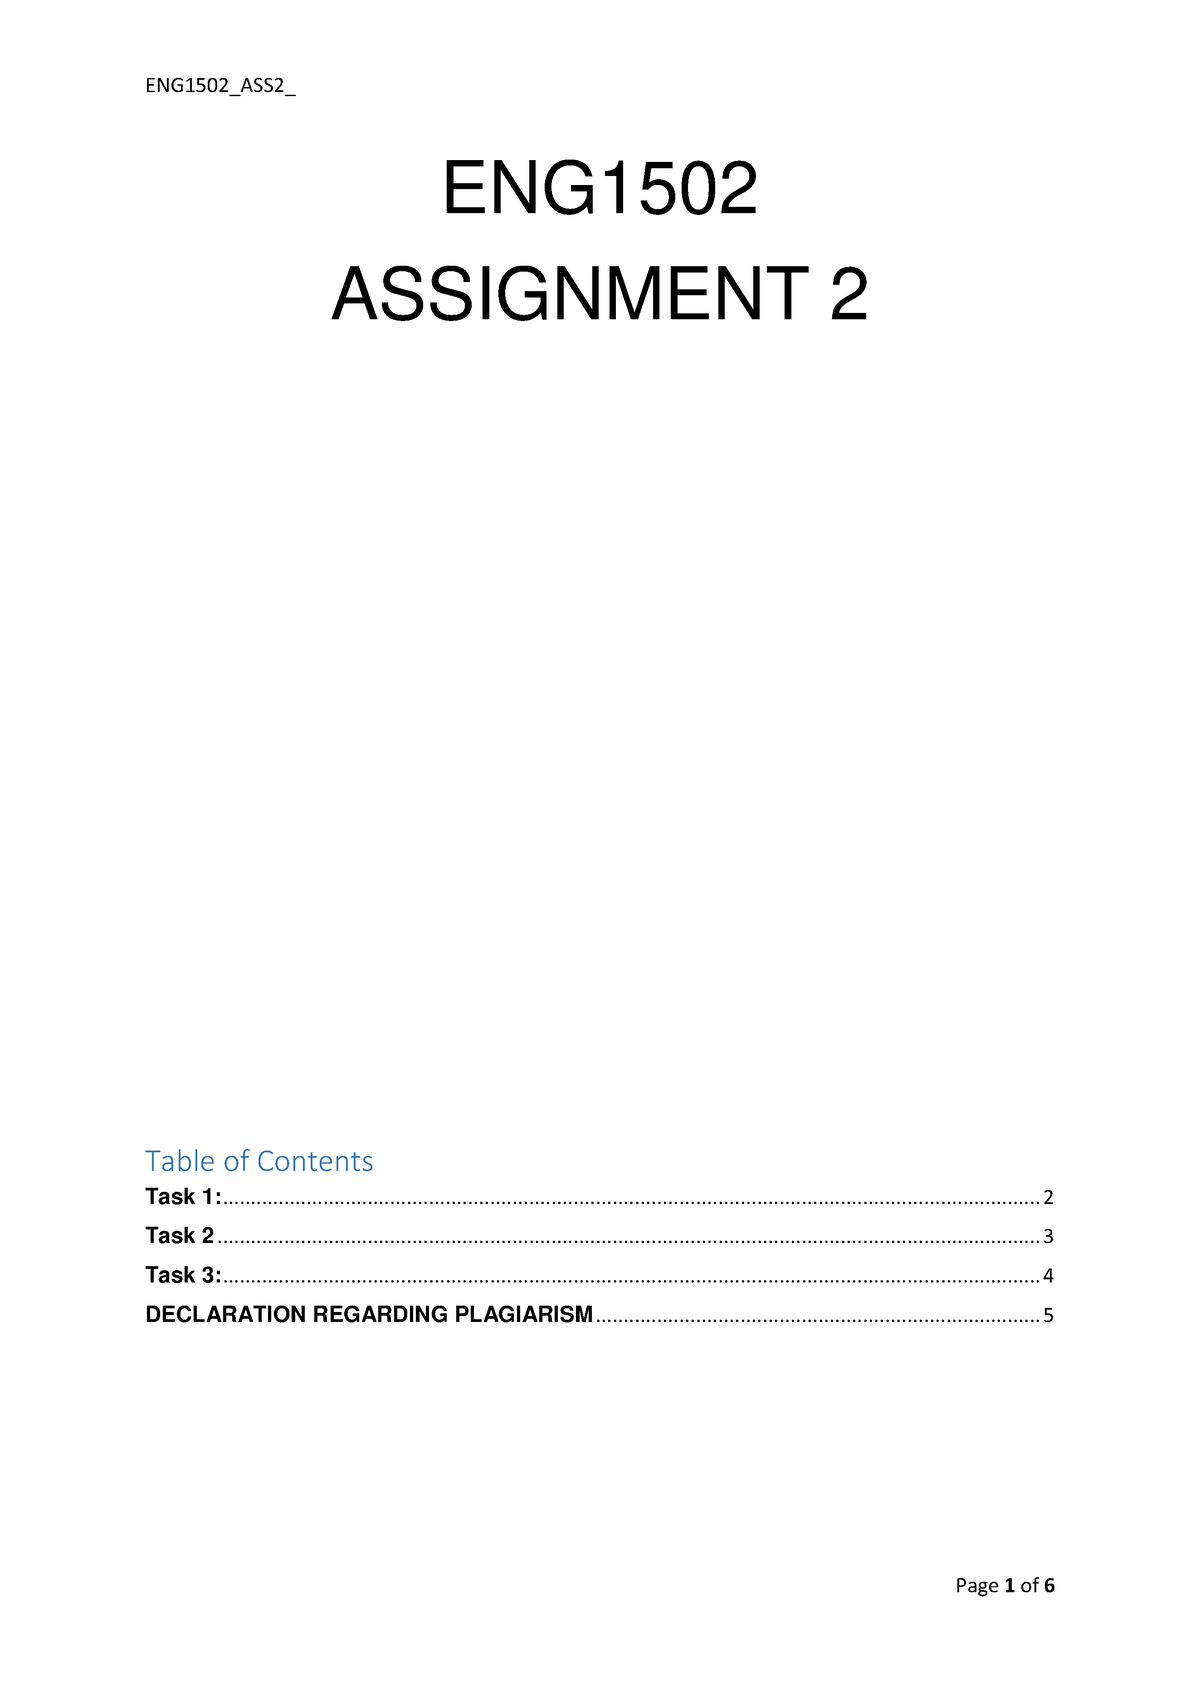 eng1502 assignment 3